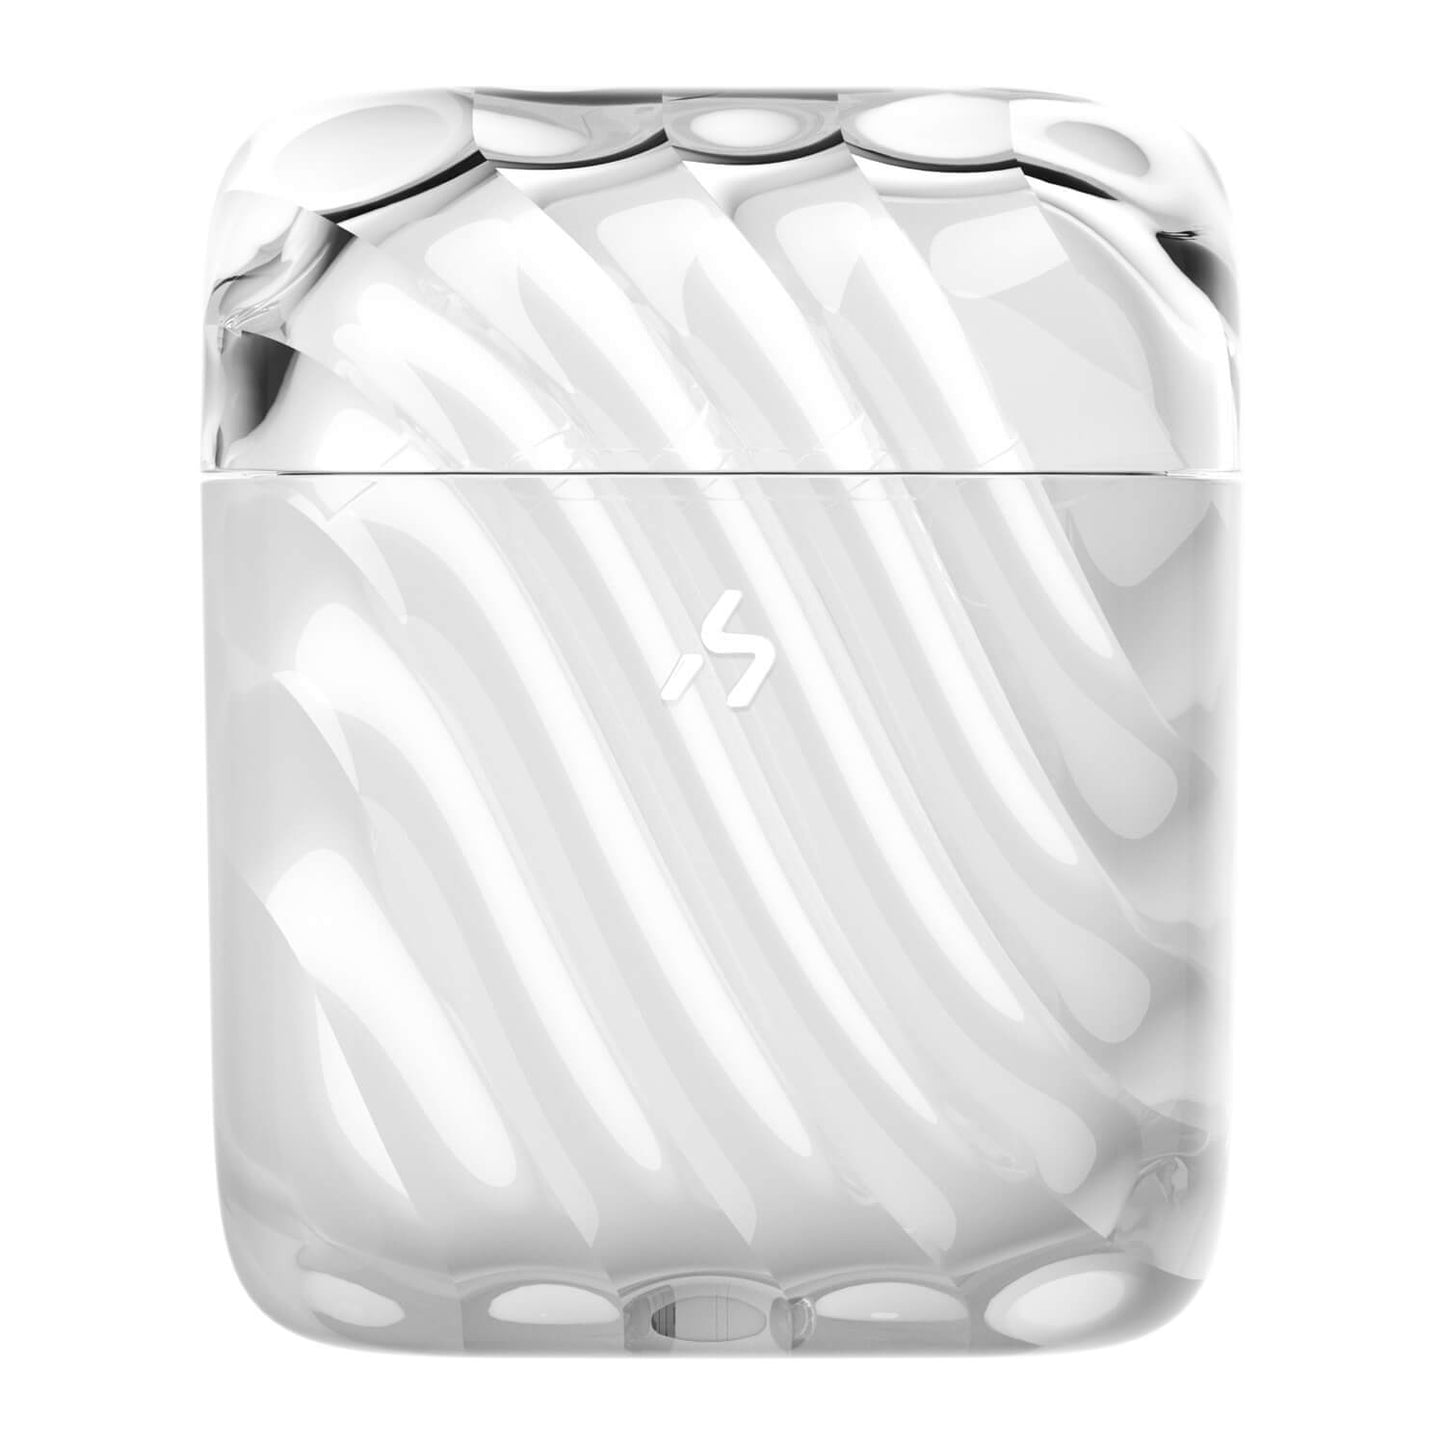 HAKII ICE Lite Auriculares inalámbricos de baja latencia para Android y iPhone (Blanco)